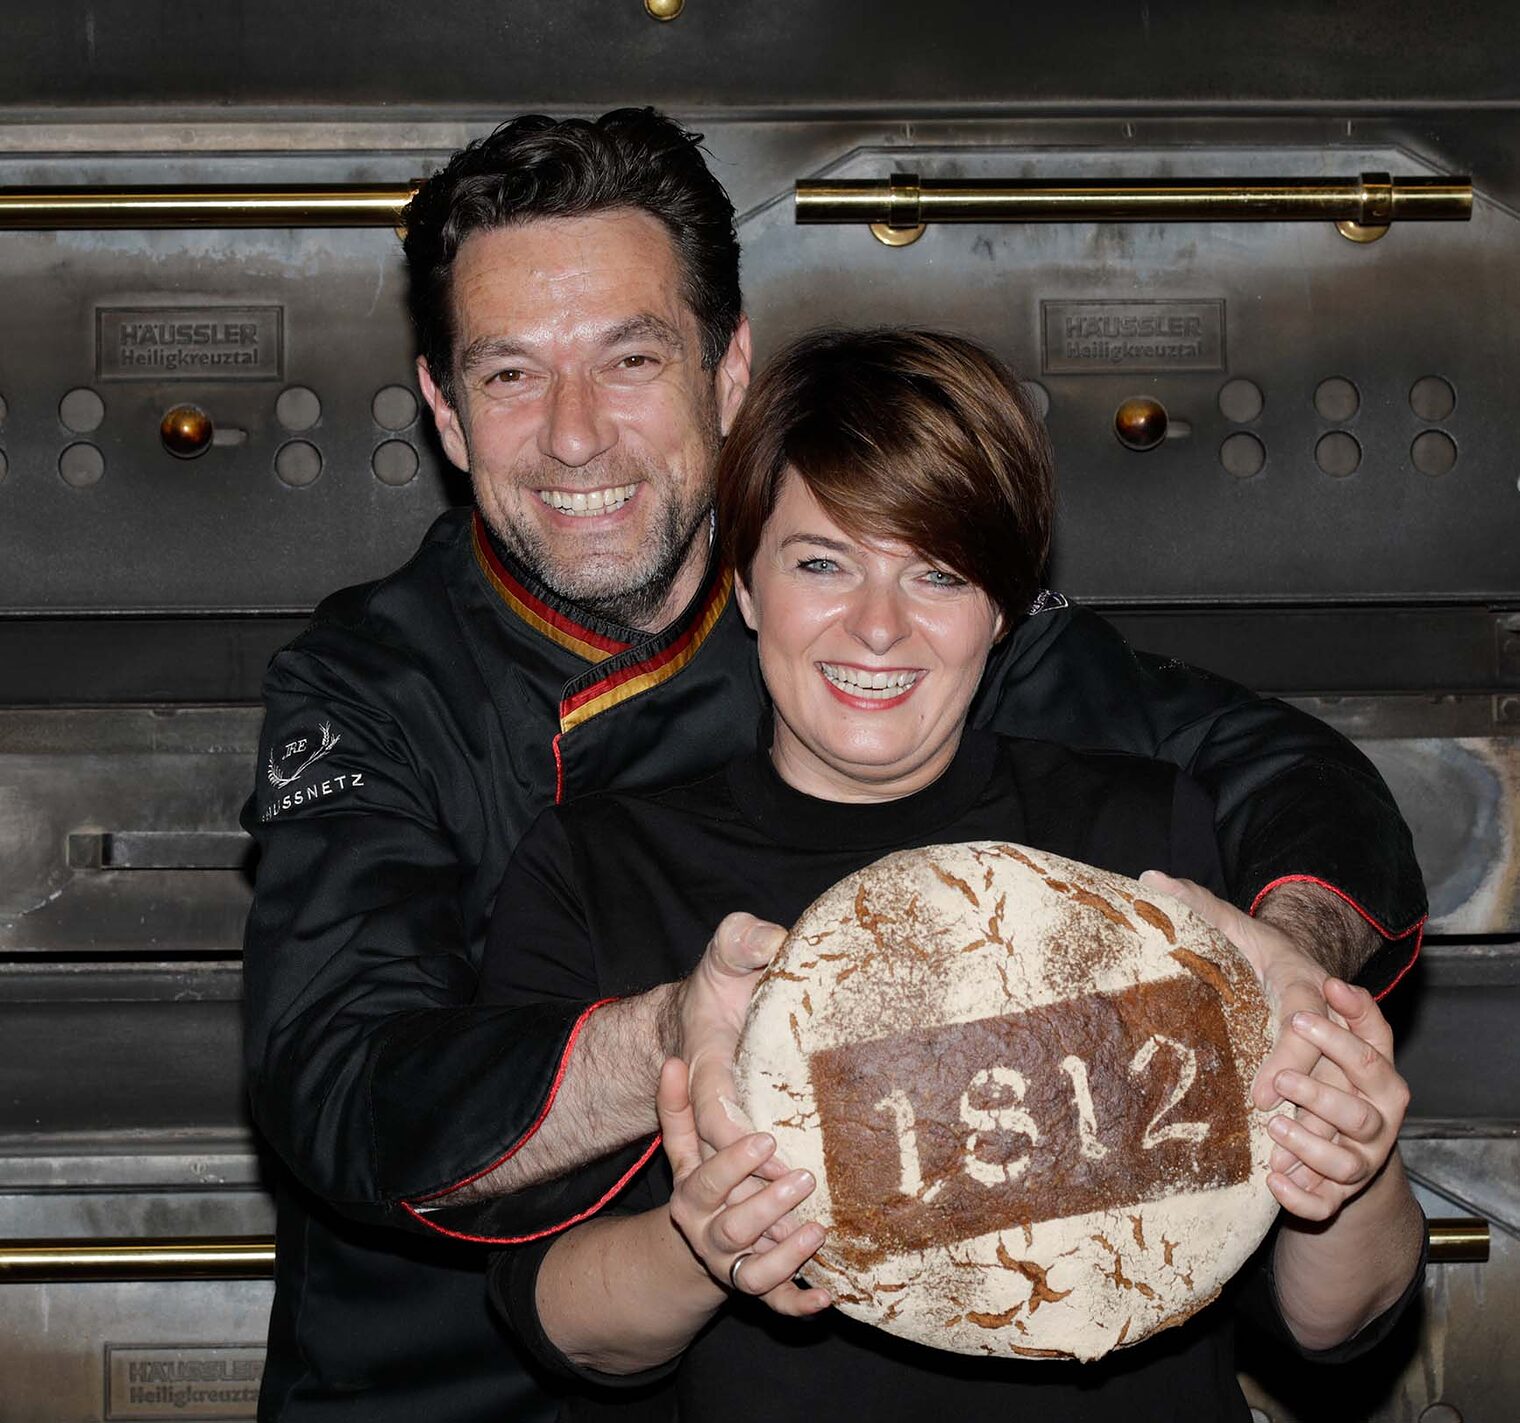 Steffi und Markus Steinleitner haben in ihrer Bäckerei die Tagschicht eingeführt.